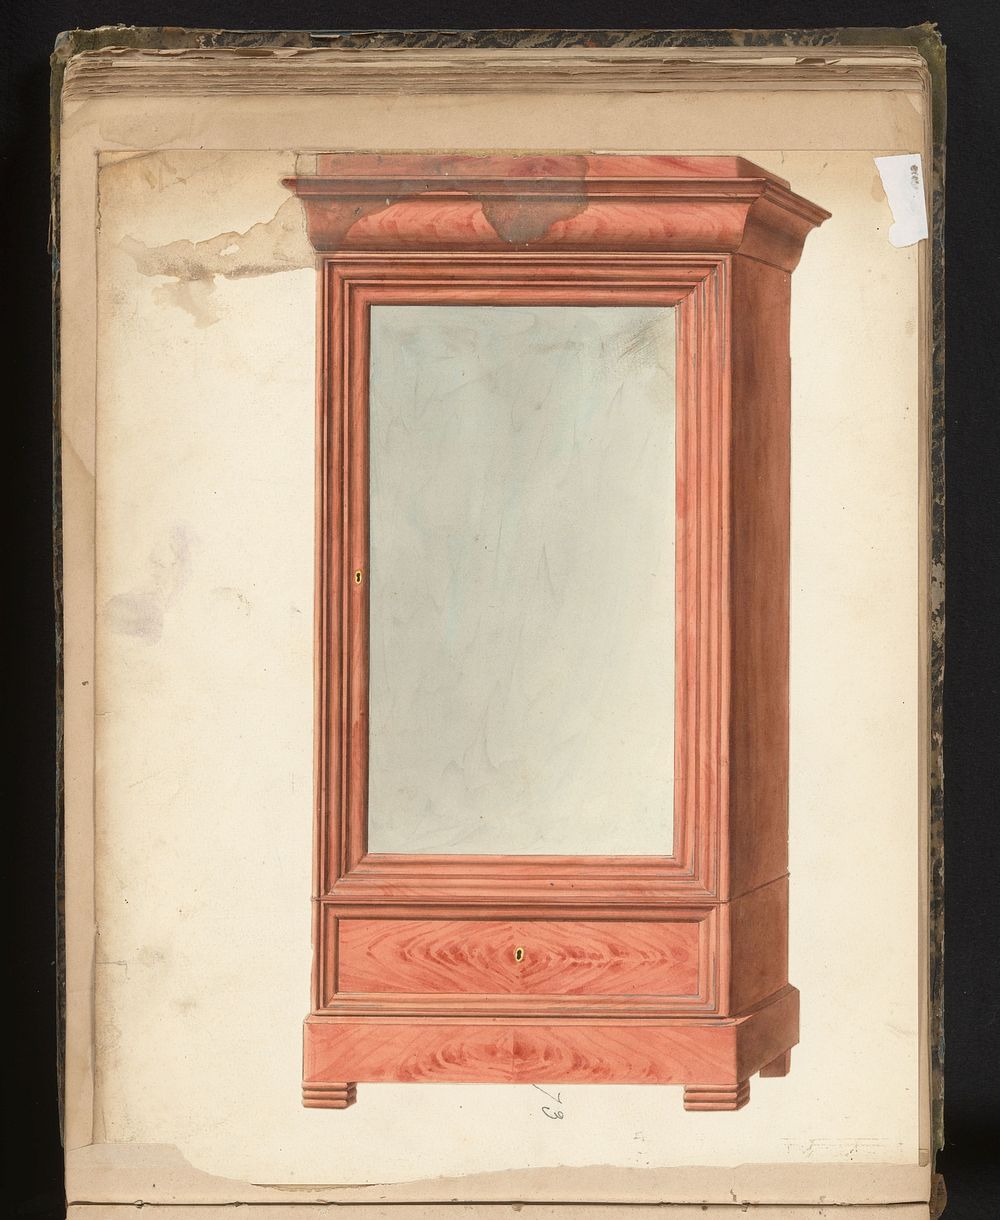 Ontwerp voor een kast (c. 1825 - c. 1839) by anonymous